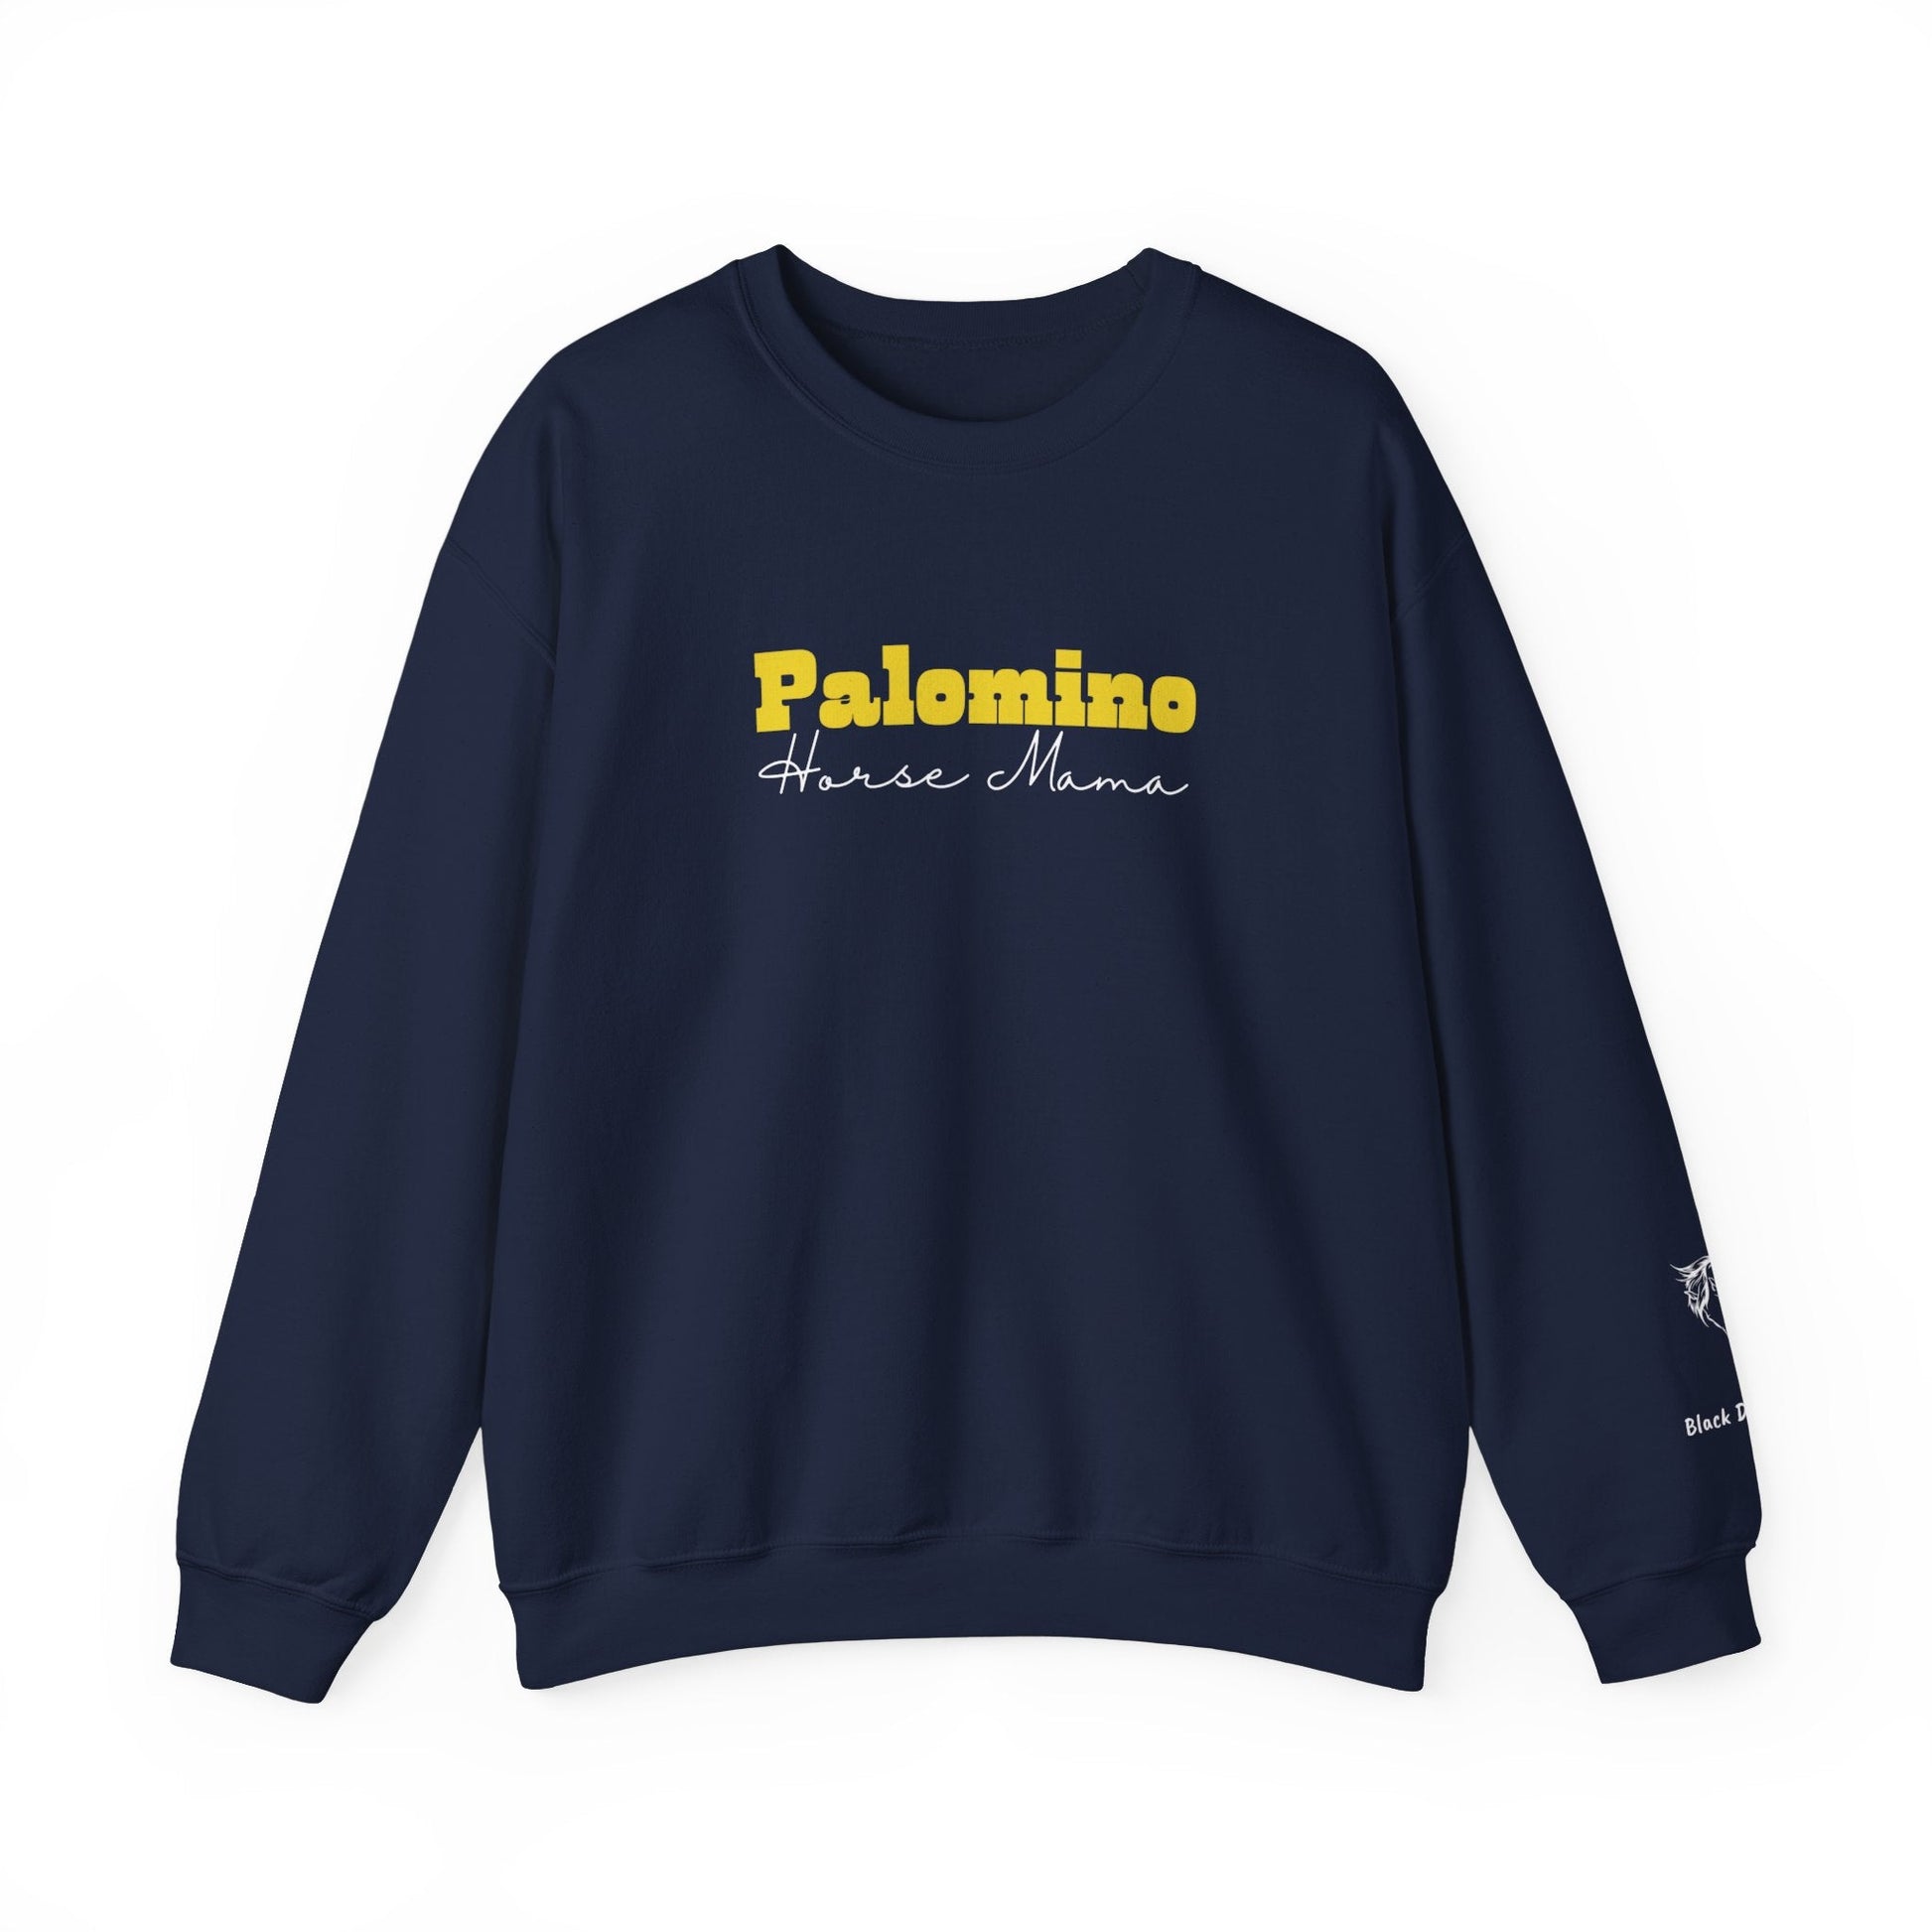 Personalized Palomino Horse Mama Sweatshirt with Horse Name on Sleeve - FlooredByArt